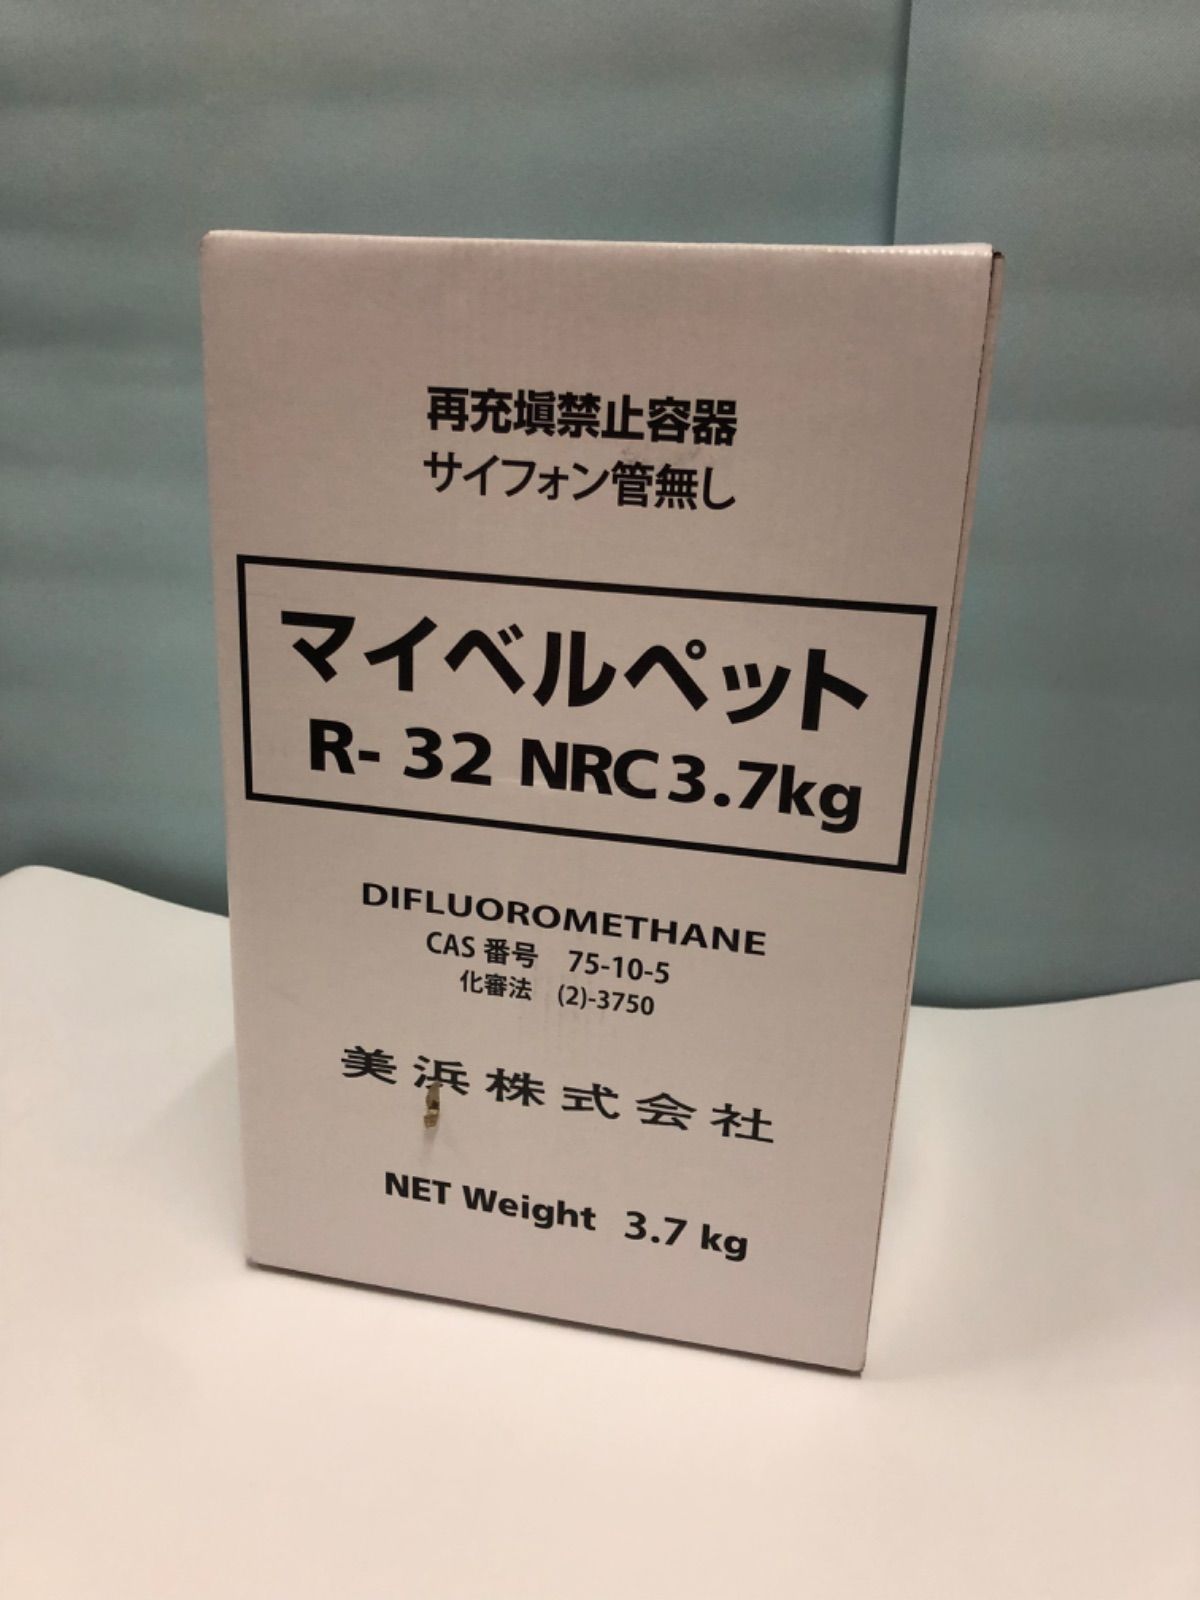 冷媒 R32 新品未使用 マイベルペット NRC 3.7kg 美浜株式会社 - エアコン